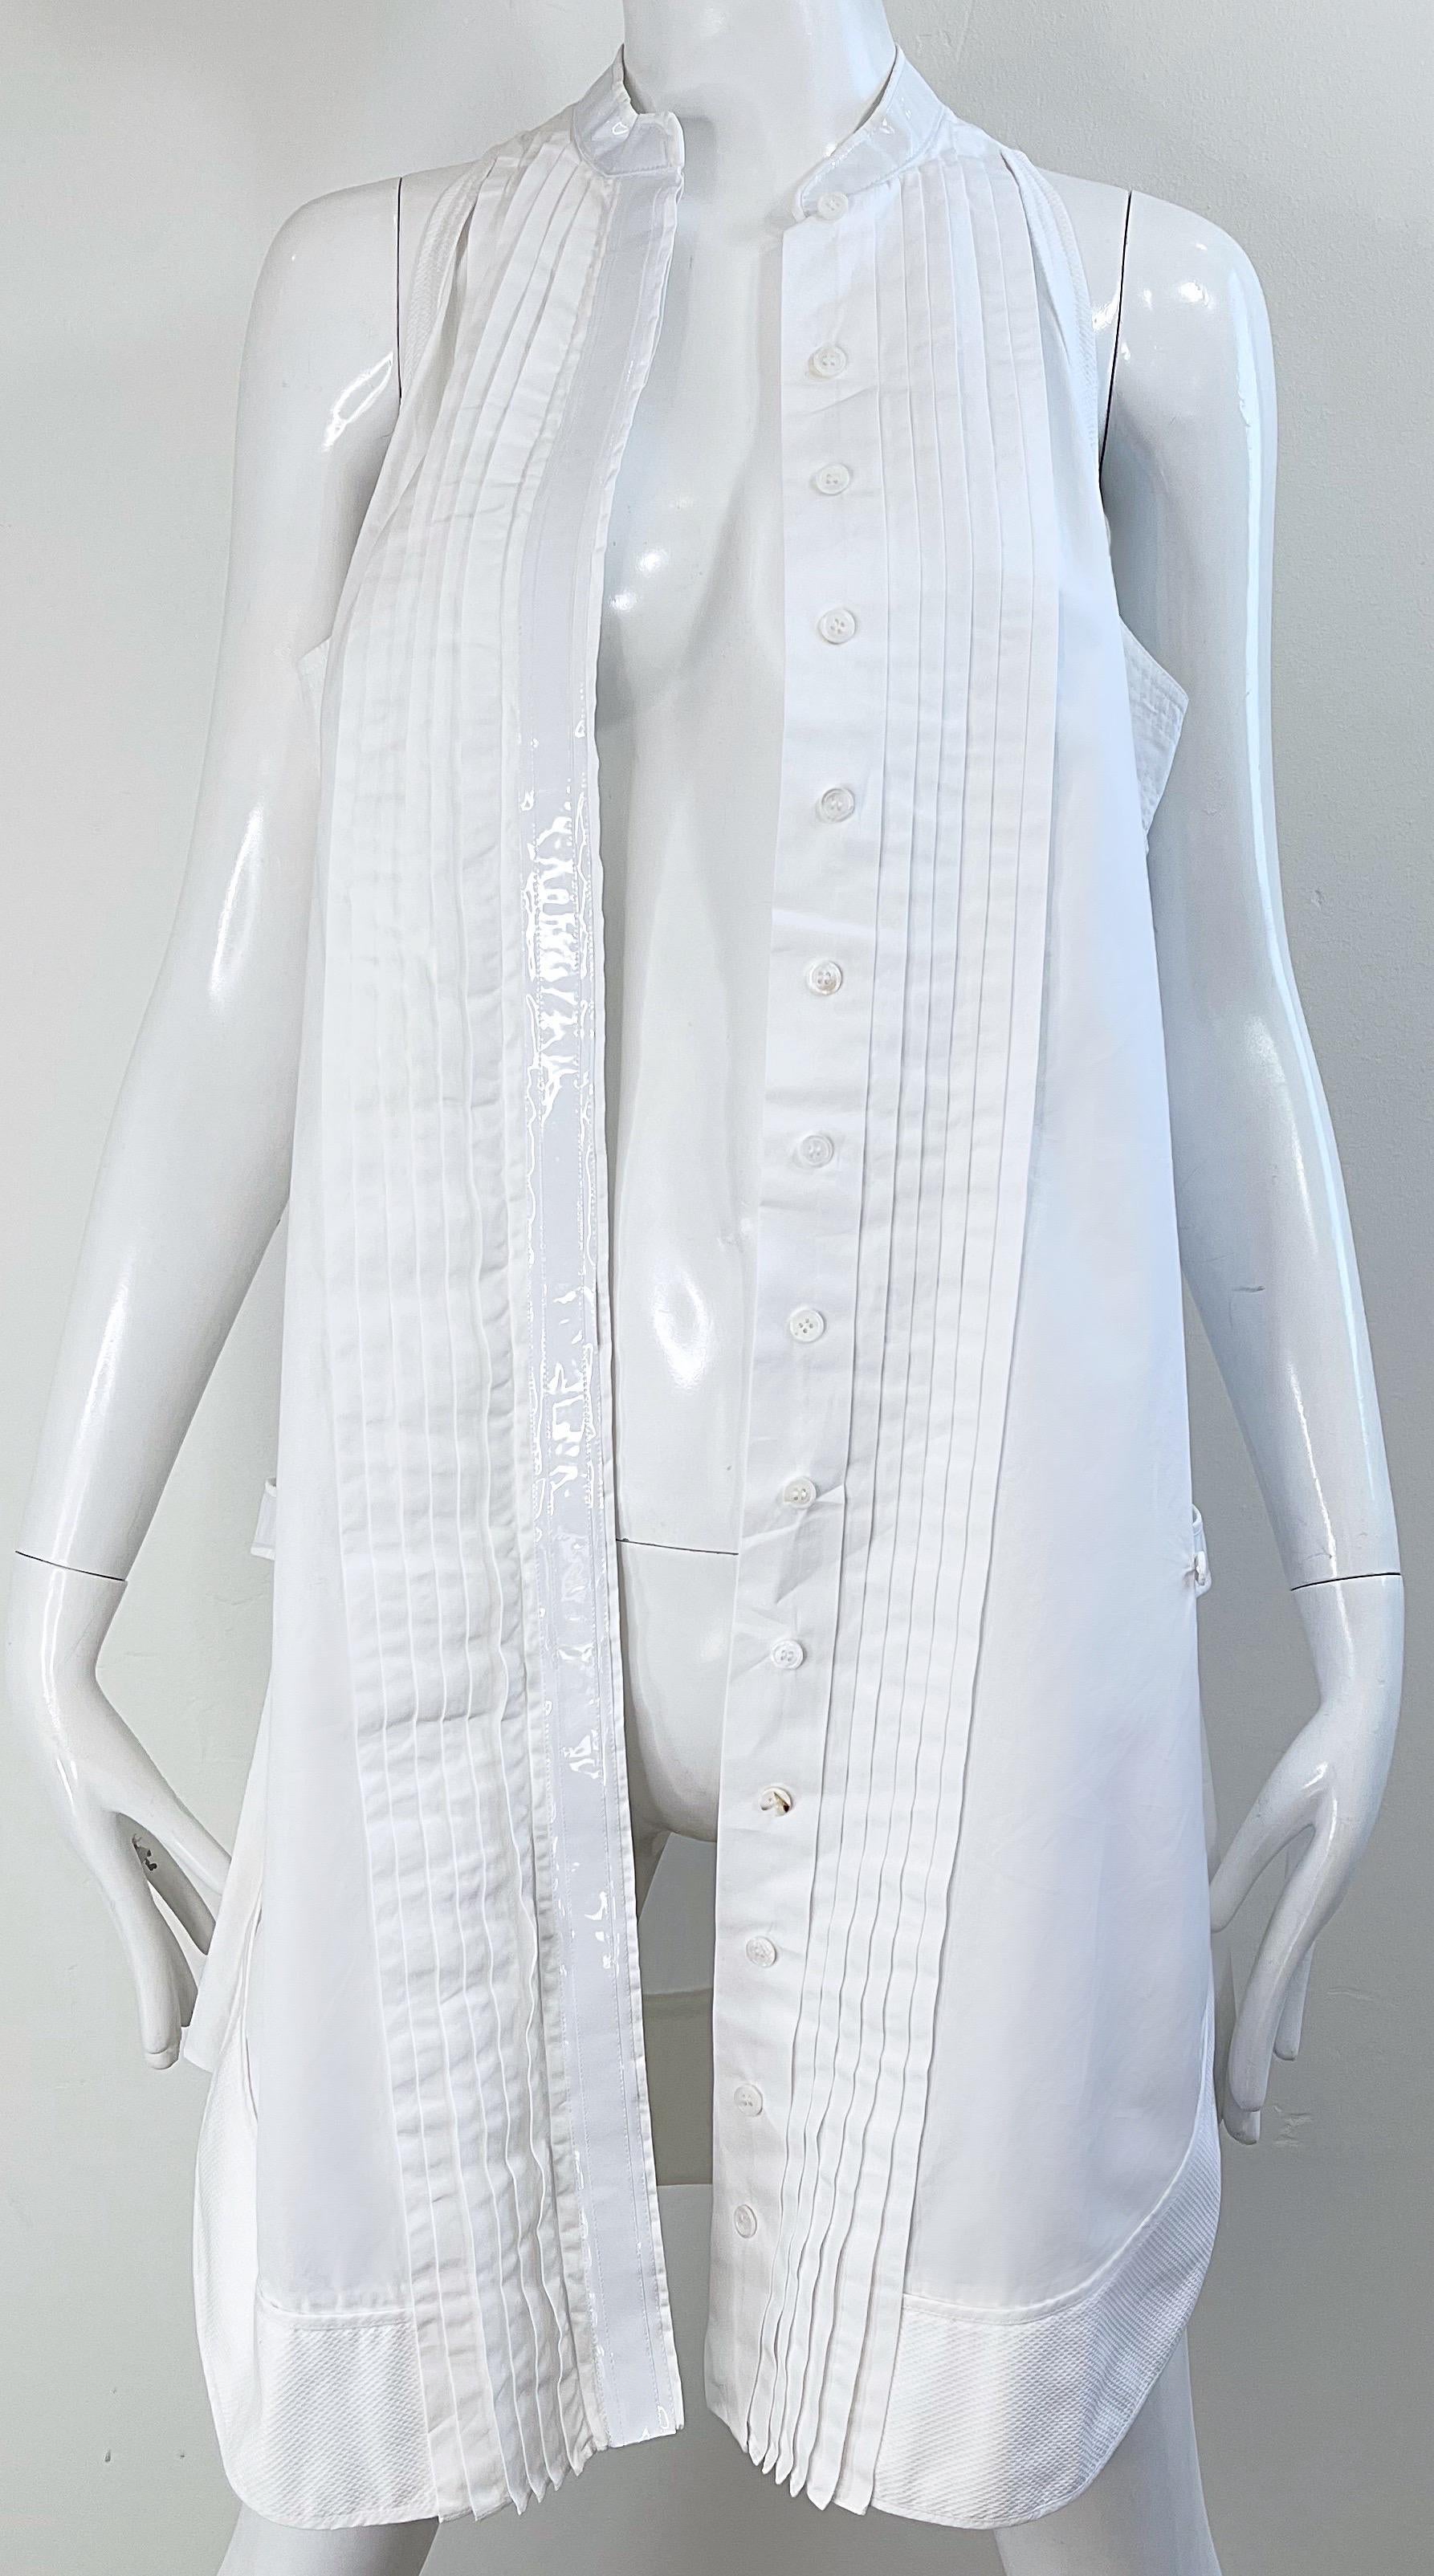 Balenciaga Spring 2007 by Nicolas Ghesquiere Size 38 / 8 White Tuxedo Dress  For Sale 3